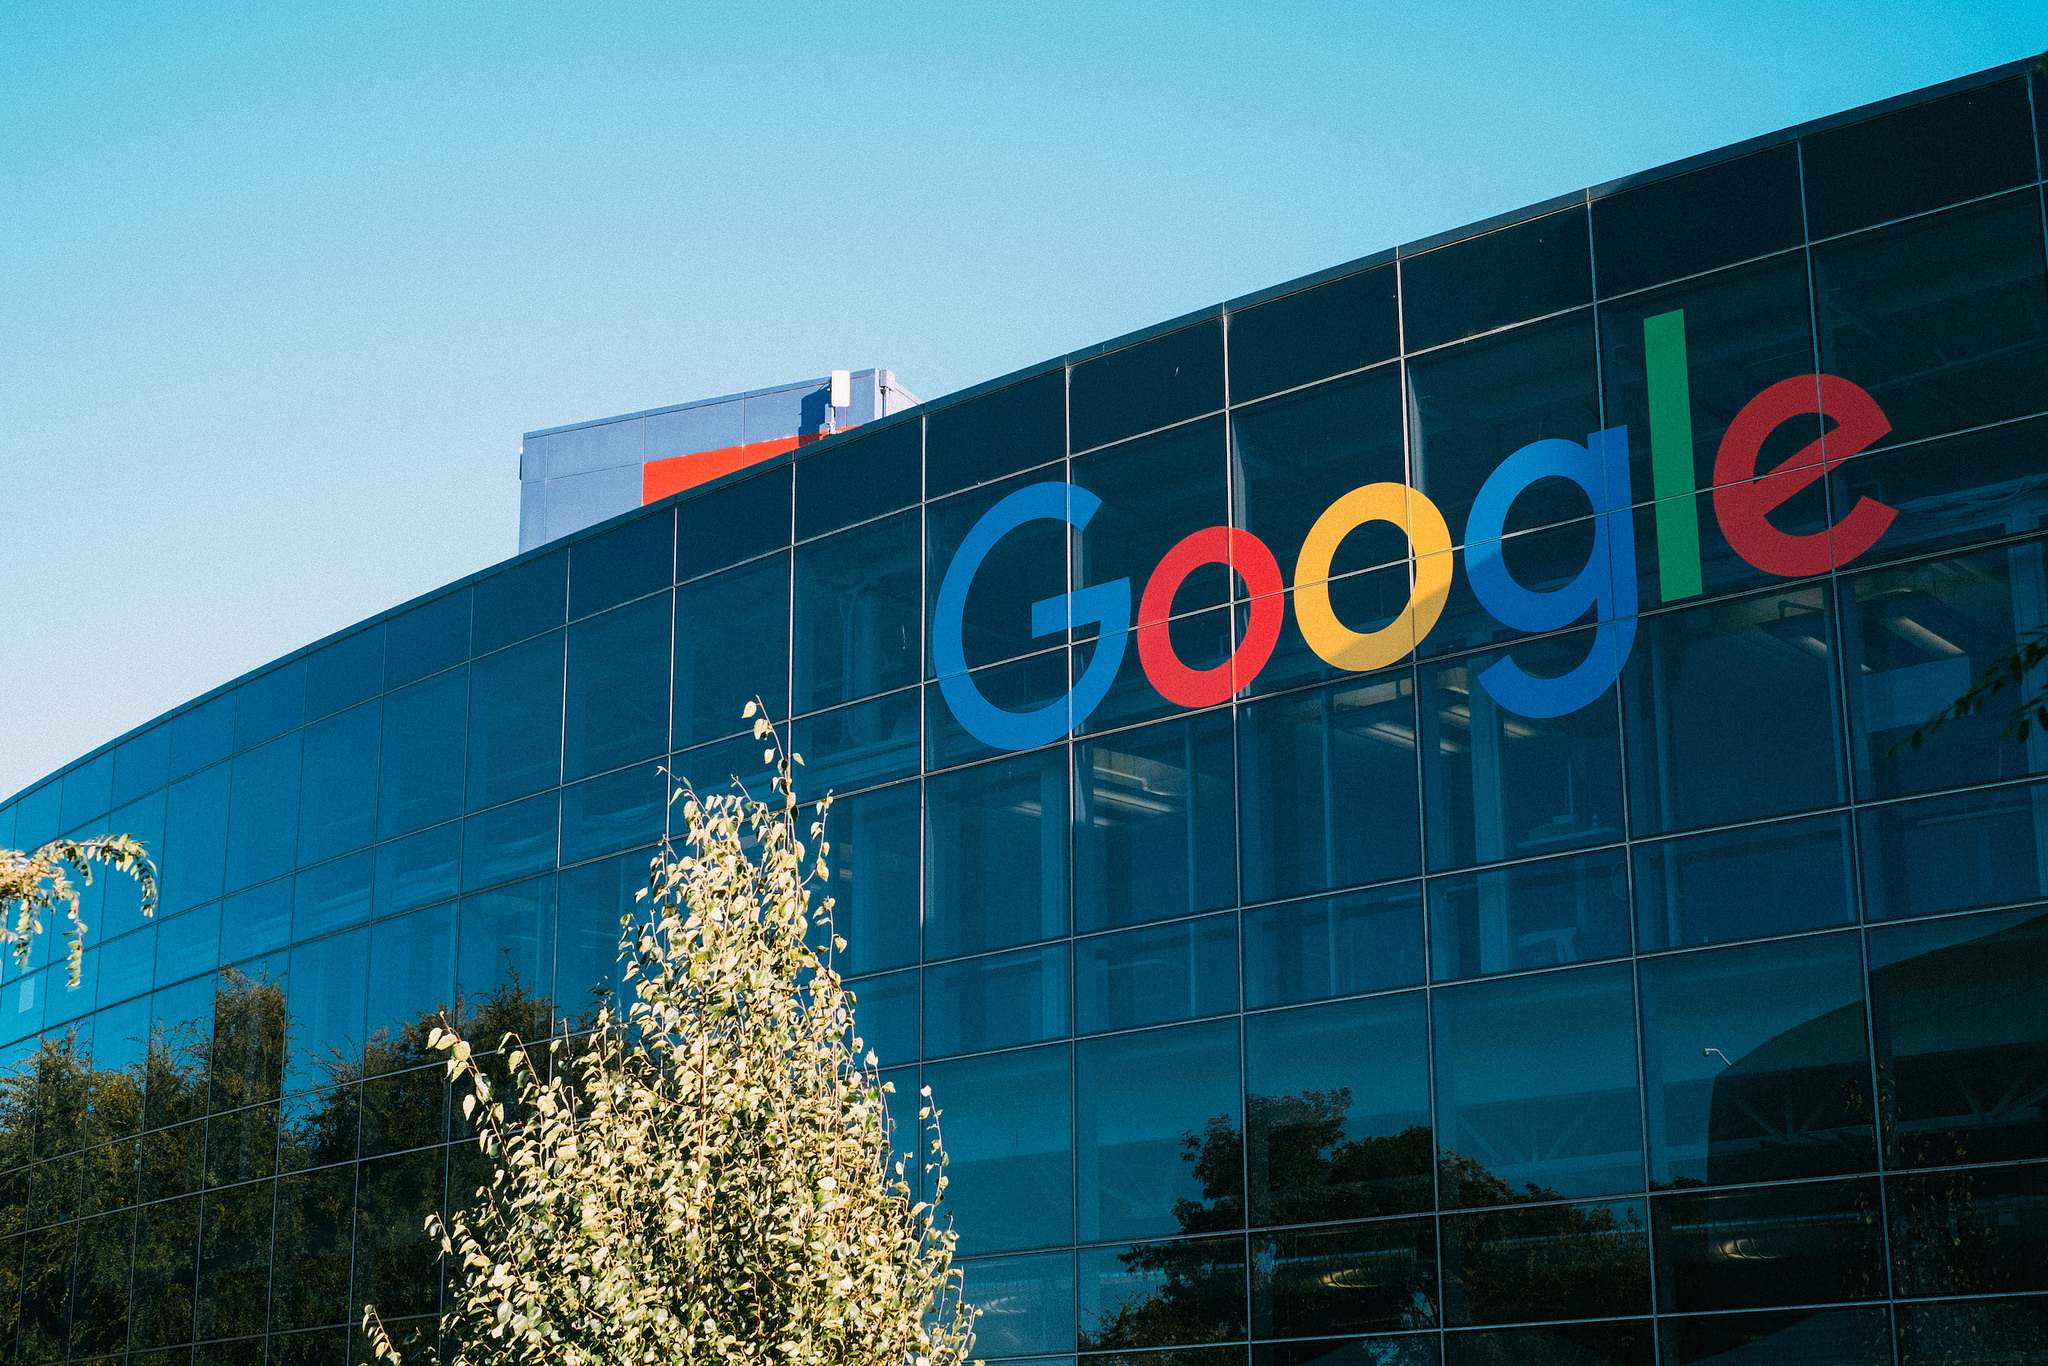 Google não irá renovar contrato com o Pentágono após críticas de funcionários